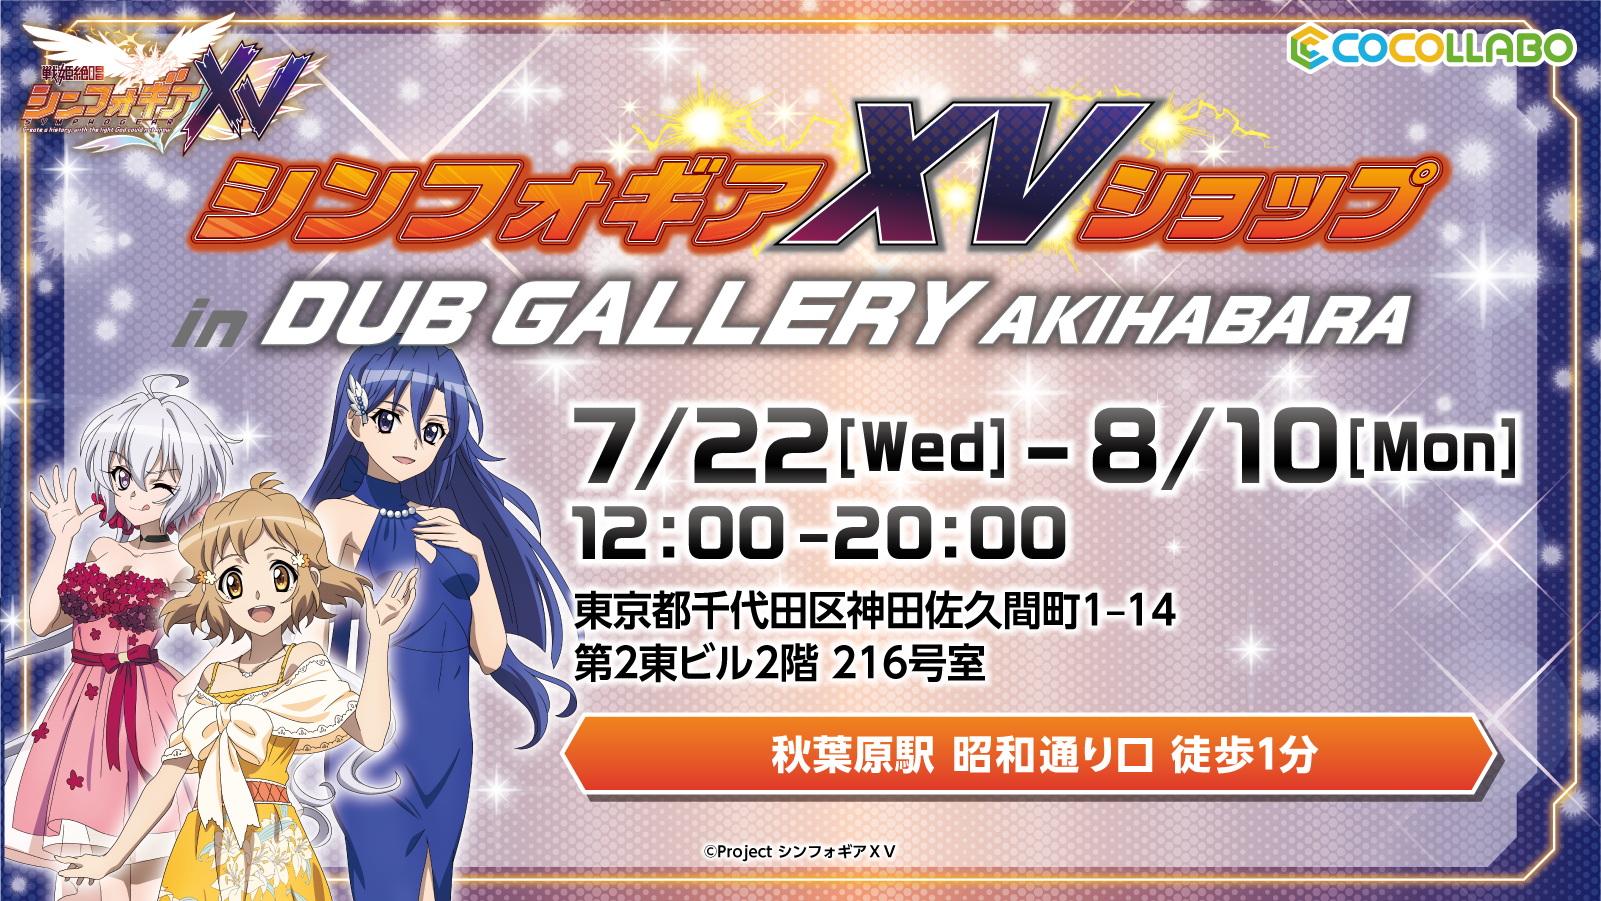 戦姫絶唱シンフォギアｘｖ を記念したオンリーショップが Dub Gallery Akihabara にて7月22日 水 より開催 Newscast